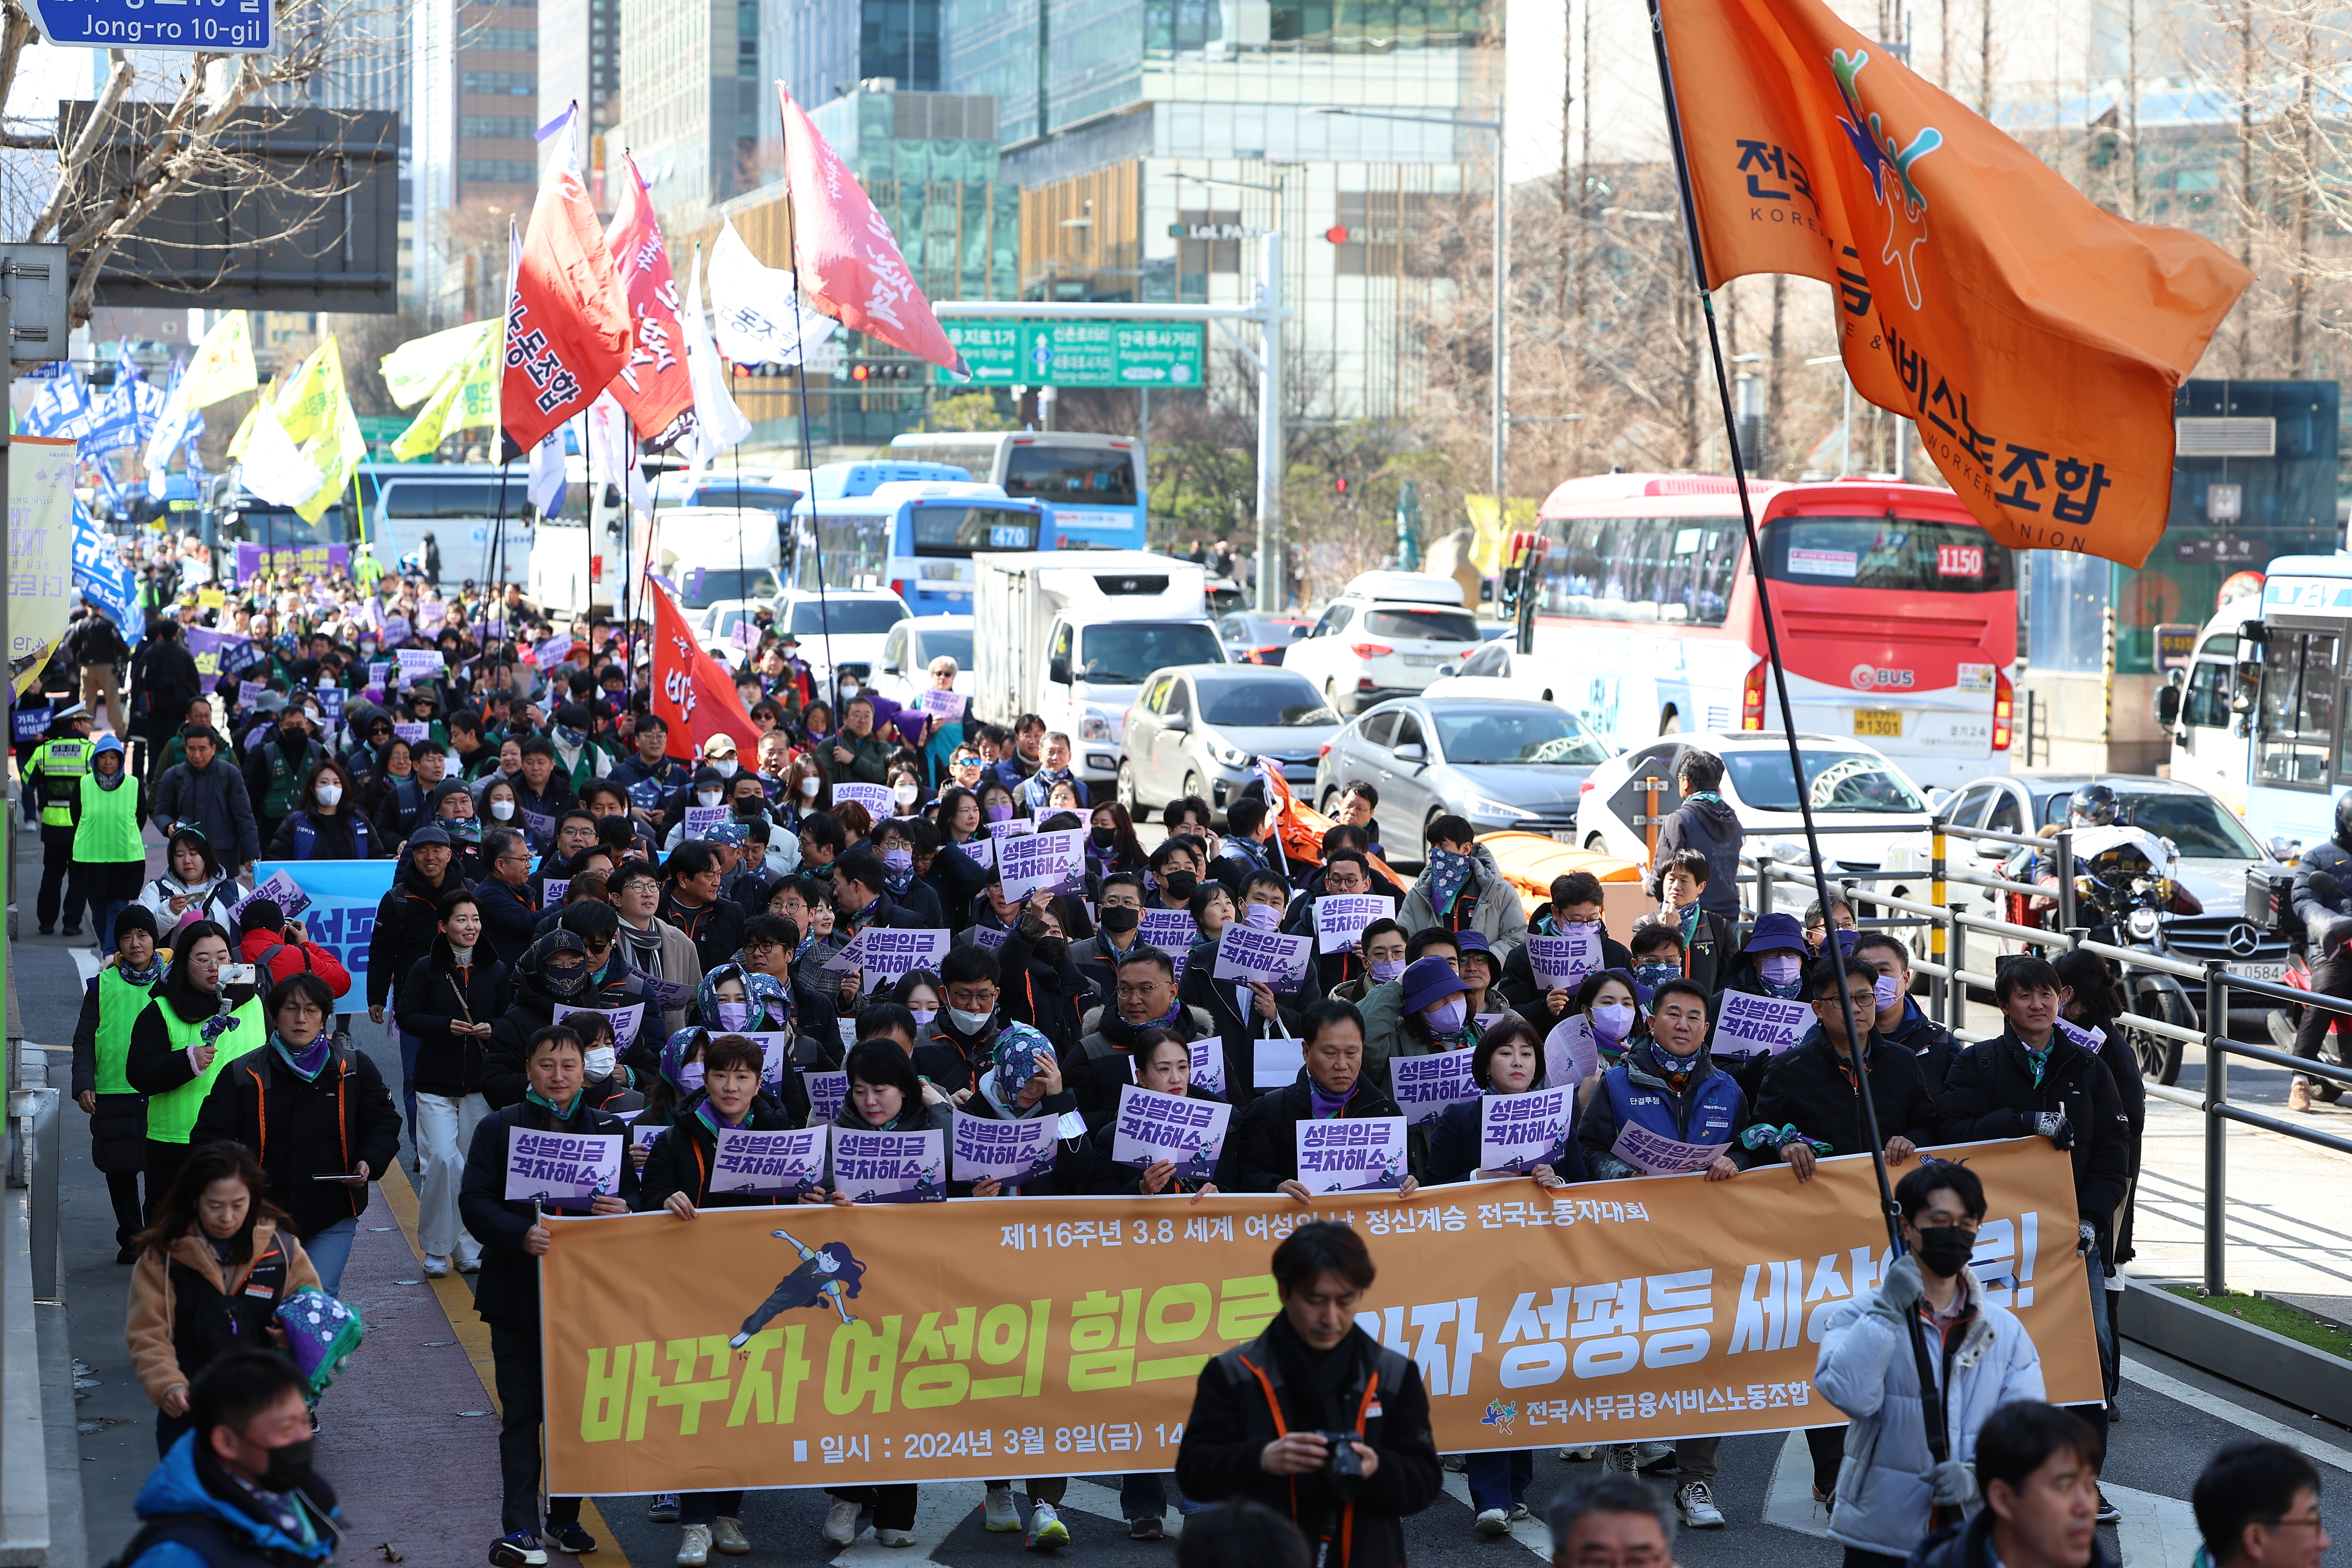 세계여성의 날인 8일 오후 민주노총 세계여성의날 정신 계승 전국노동자대회 참가자들이 서울 종로에서 대학로 방면으로 거리 행진을 하고 있다. 연합뉴스